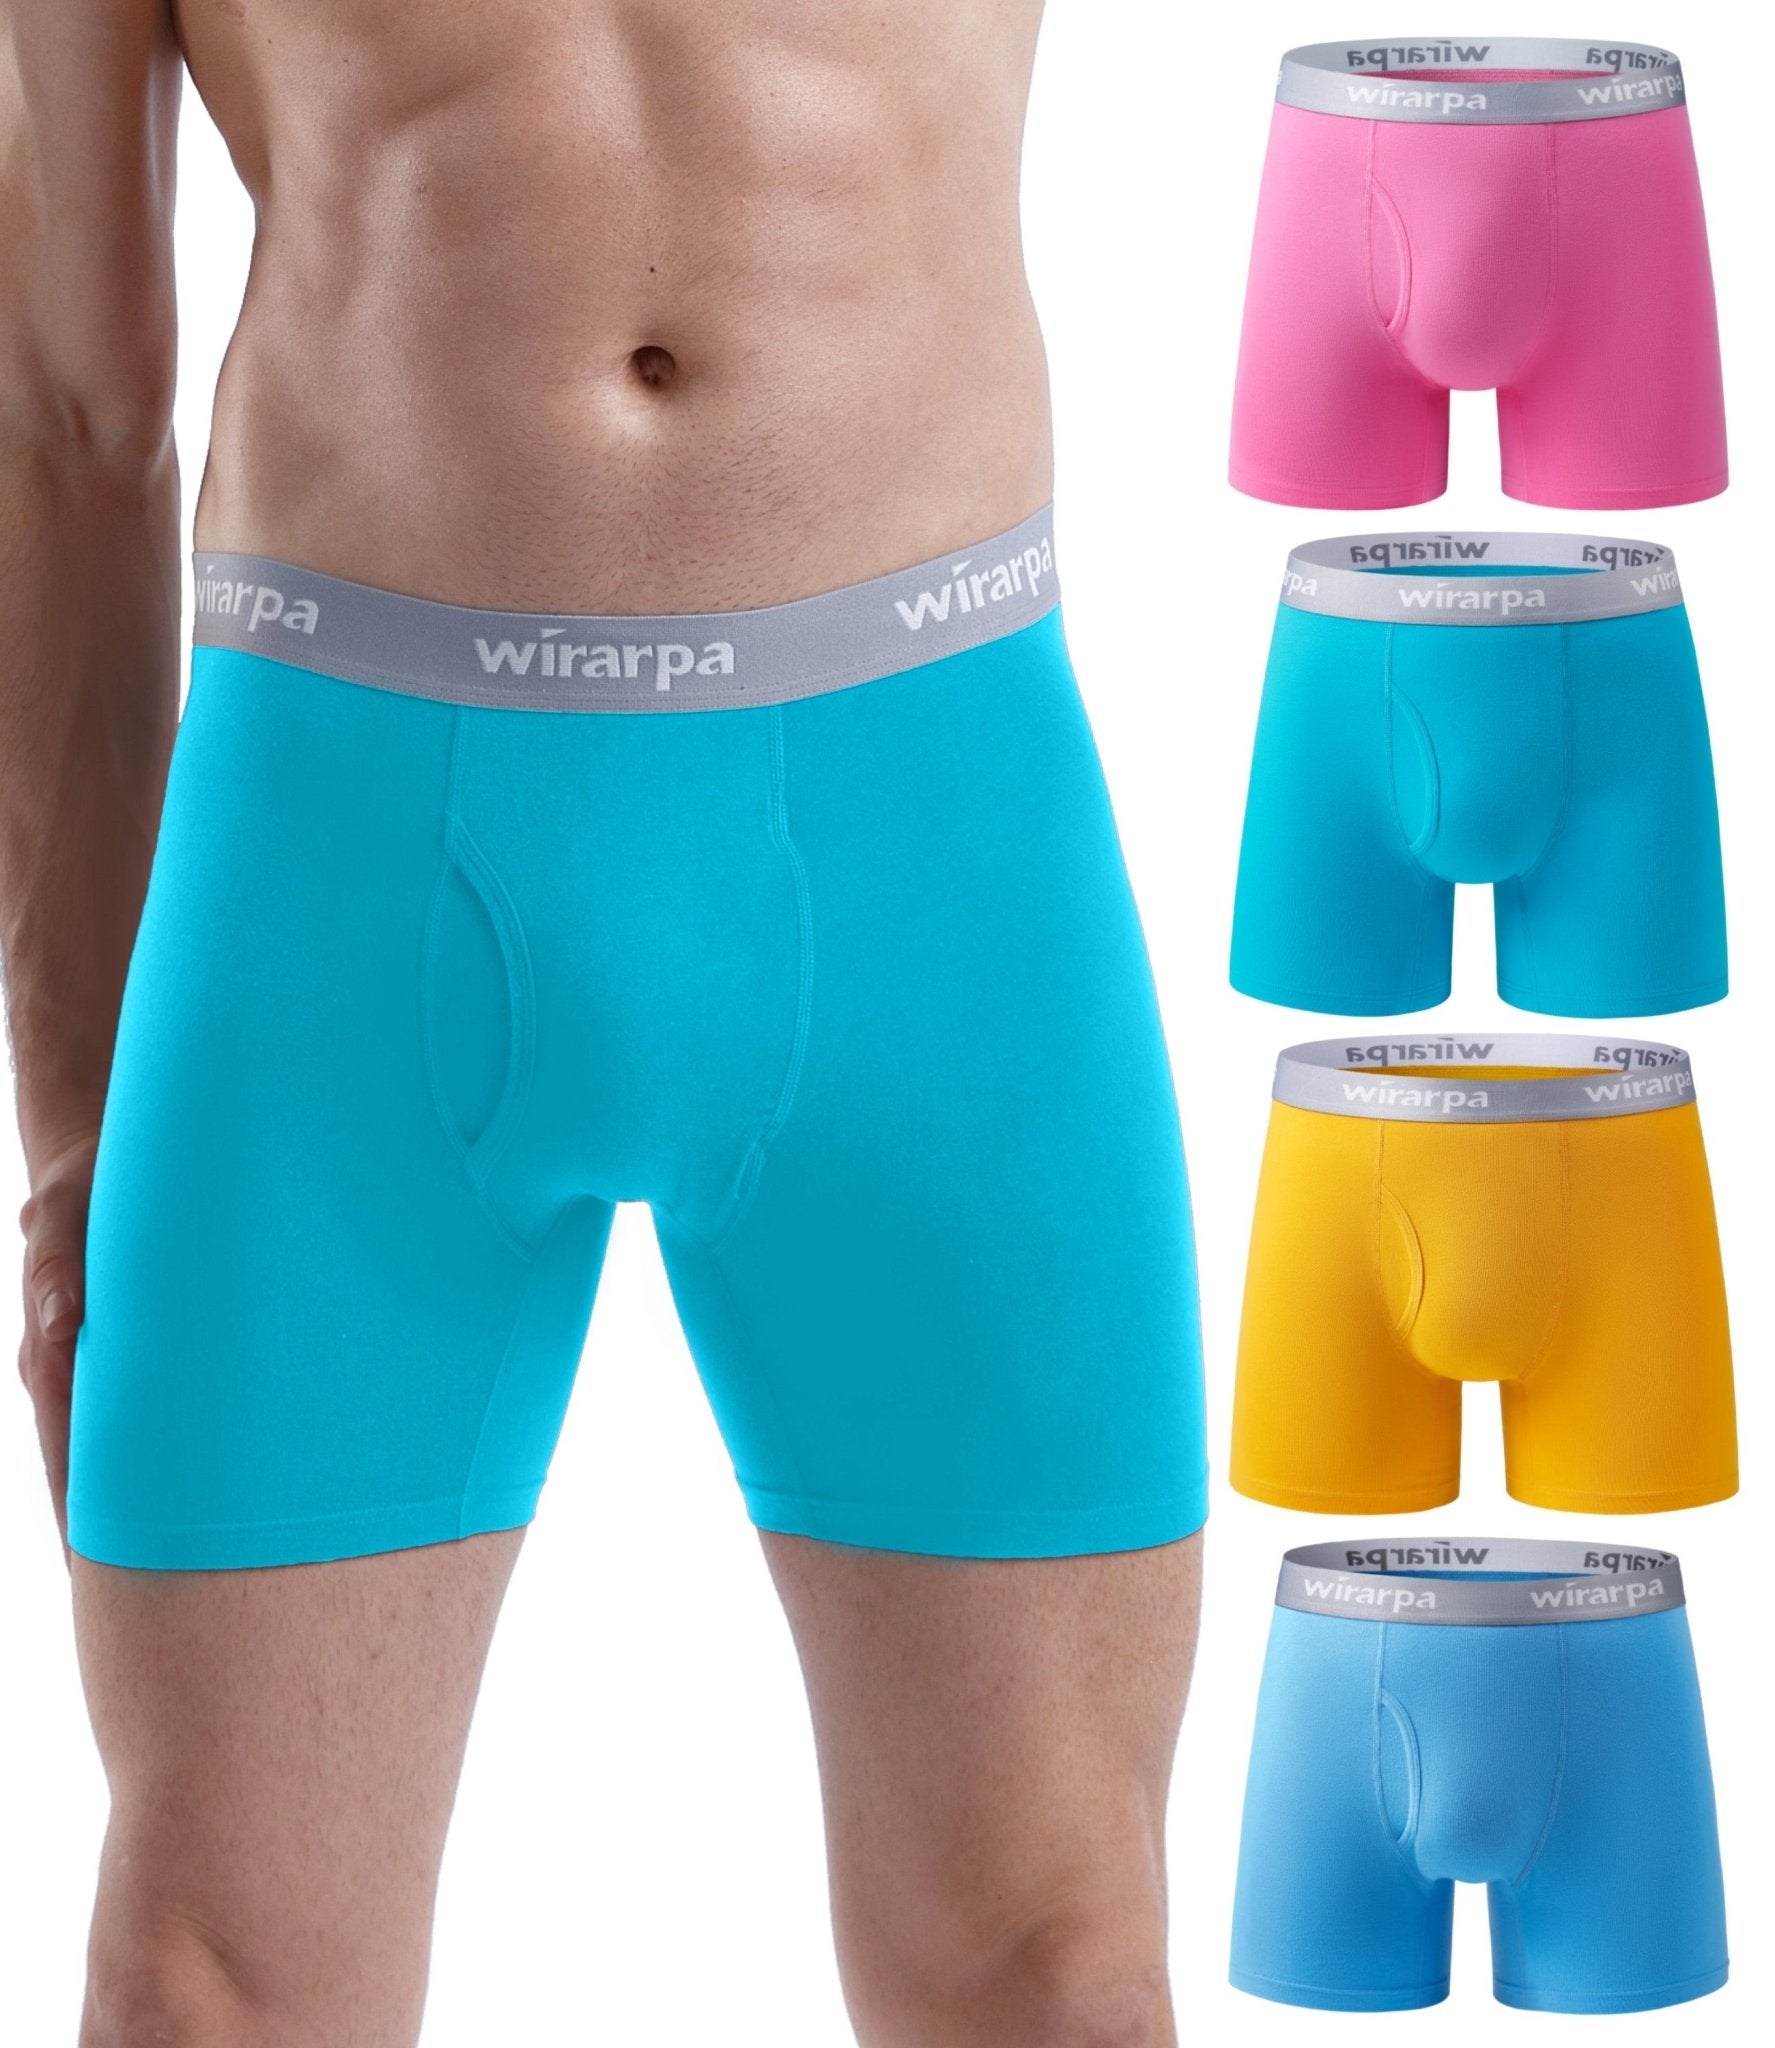 wirarpa Men's Cotton Boxer Briefs Underwear Regular Leg 4 Pack